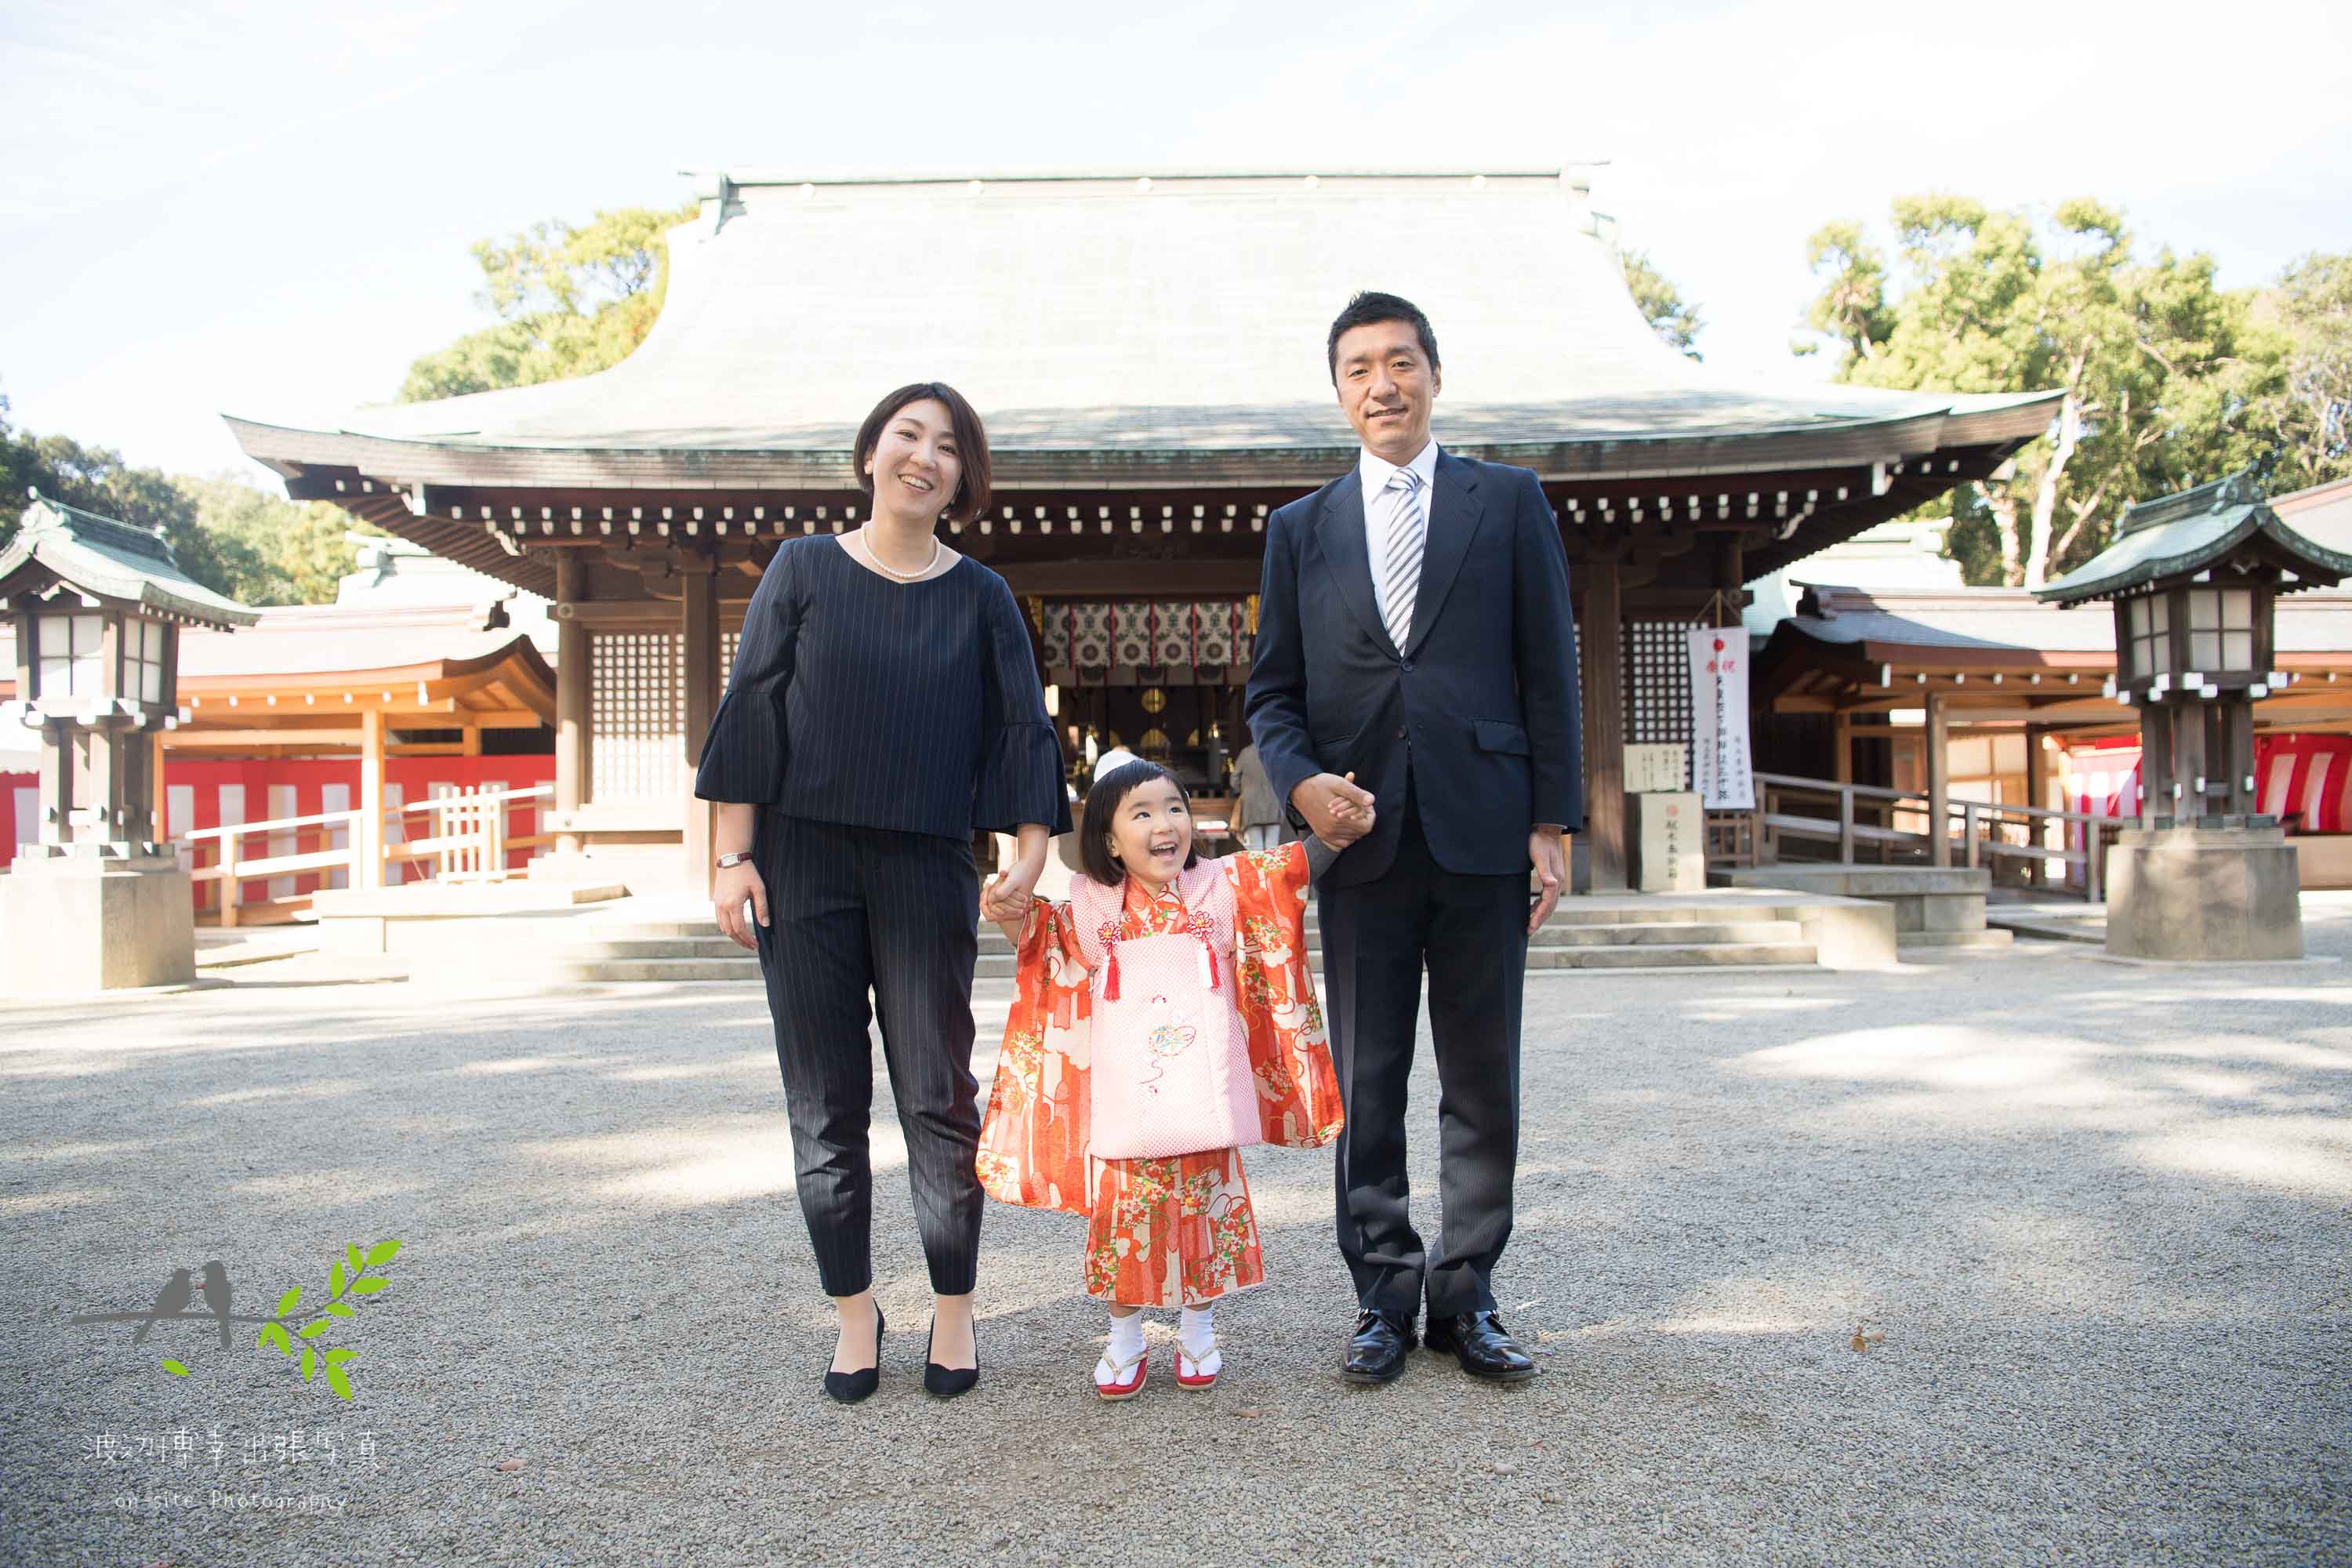 神社本殿の前に並ぶオレンジ色の着物を着た女の子とパパとママ